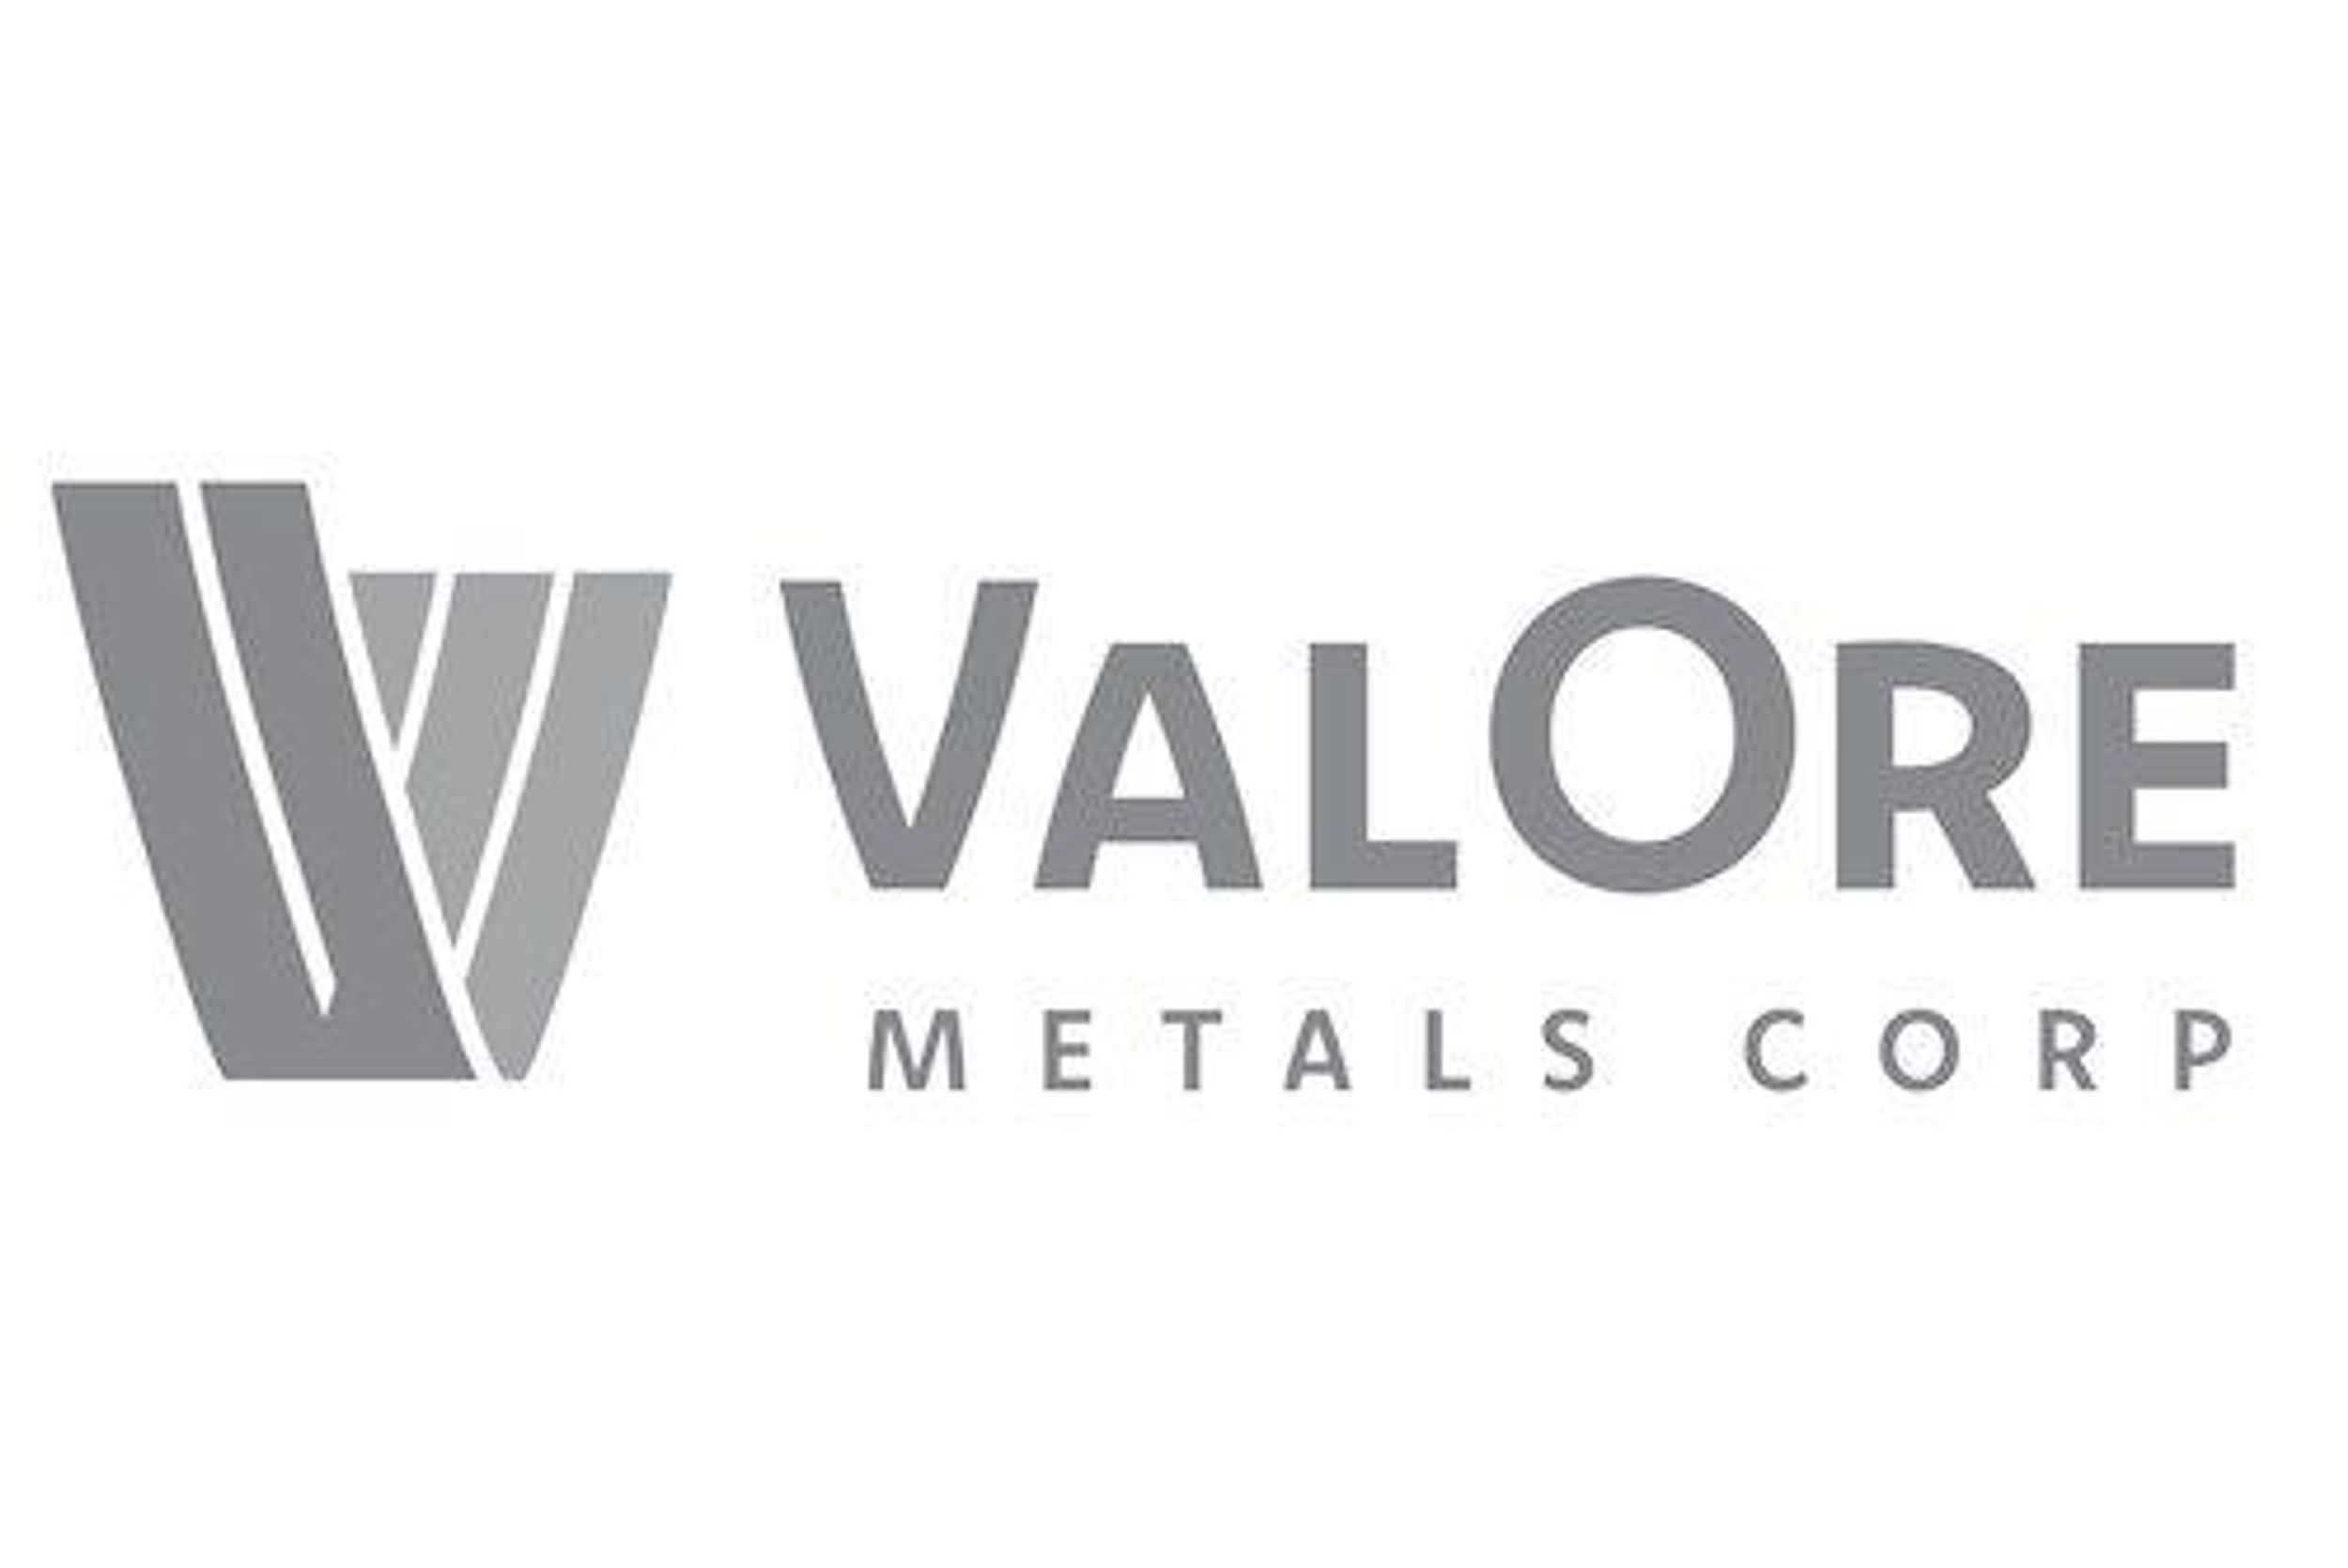 ValOre Metals